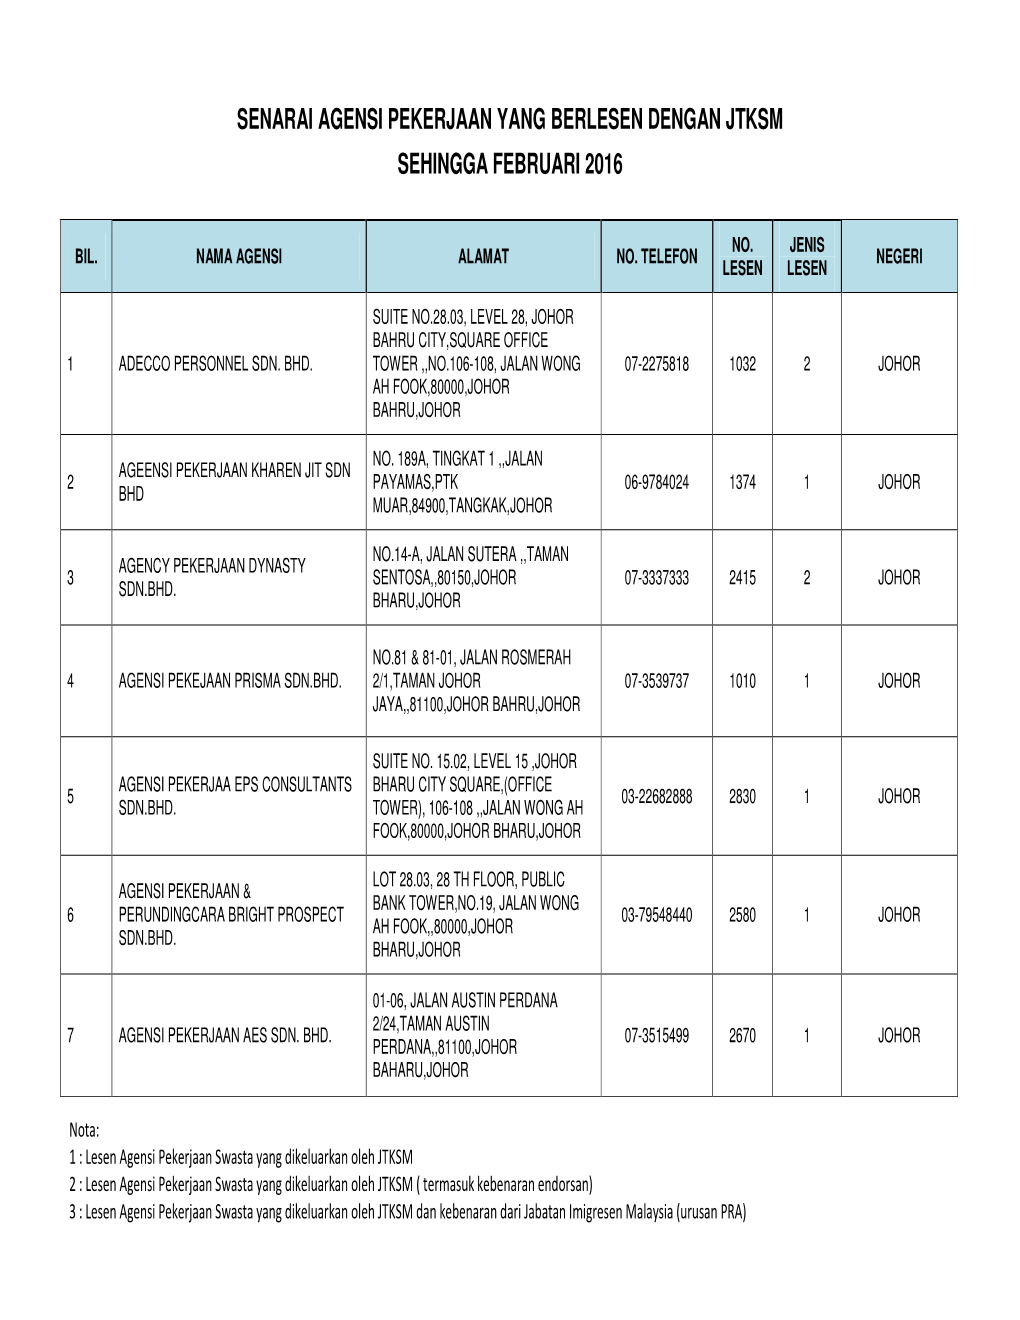 Senarai Agensi Pekerjaan Yang Berlesen Dengan Jtksm Sehingga Februari 2016